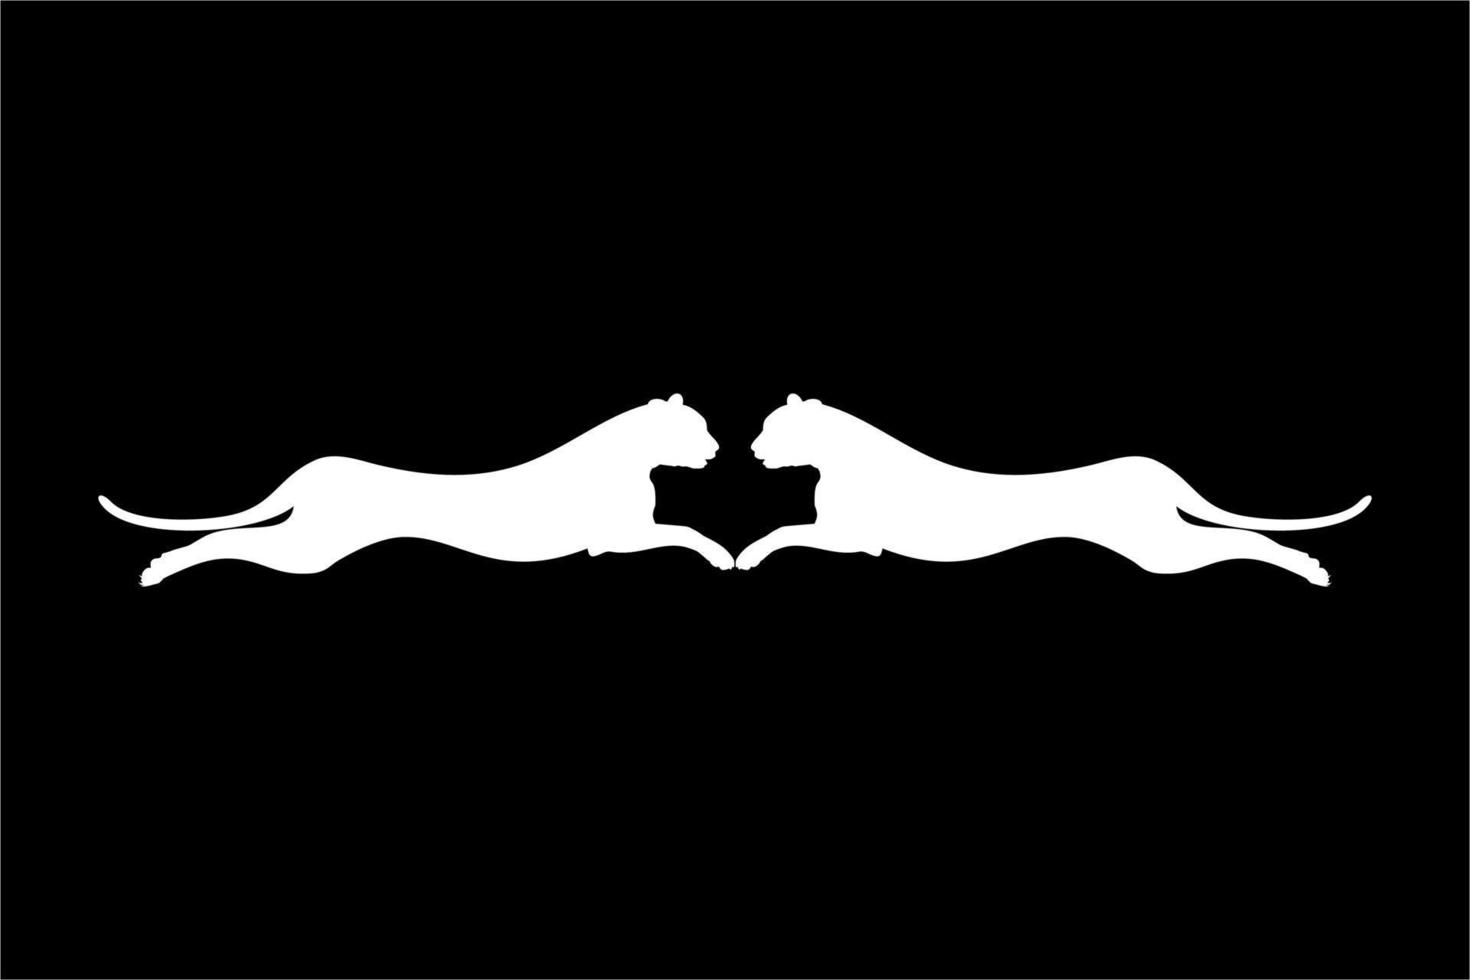 silhouette de la paire sautante de la famille chat sauvage, tigre, léopard, panthère, guépard, jaguar, puma et gros chat, pour logo, pictogramme, site Web ou élément de conception graphique. illustration vectorielle vecteur